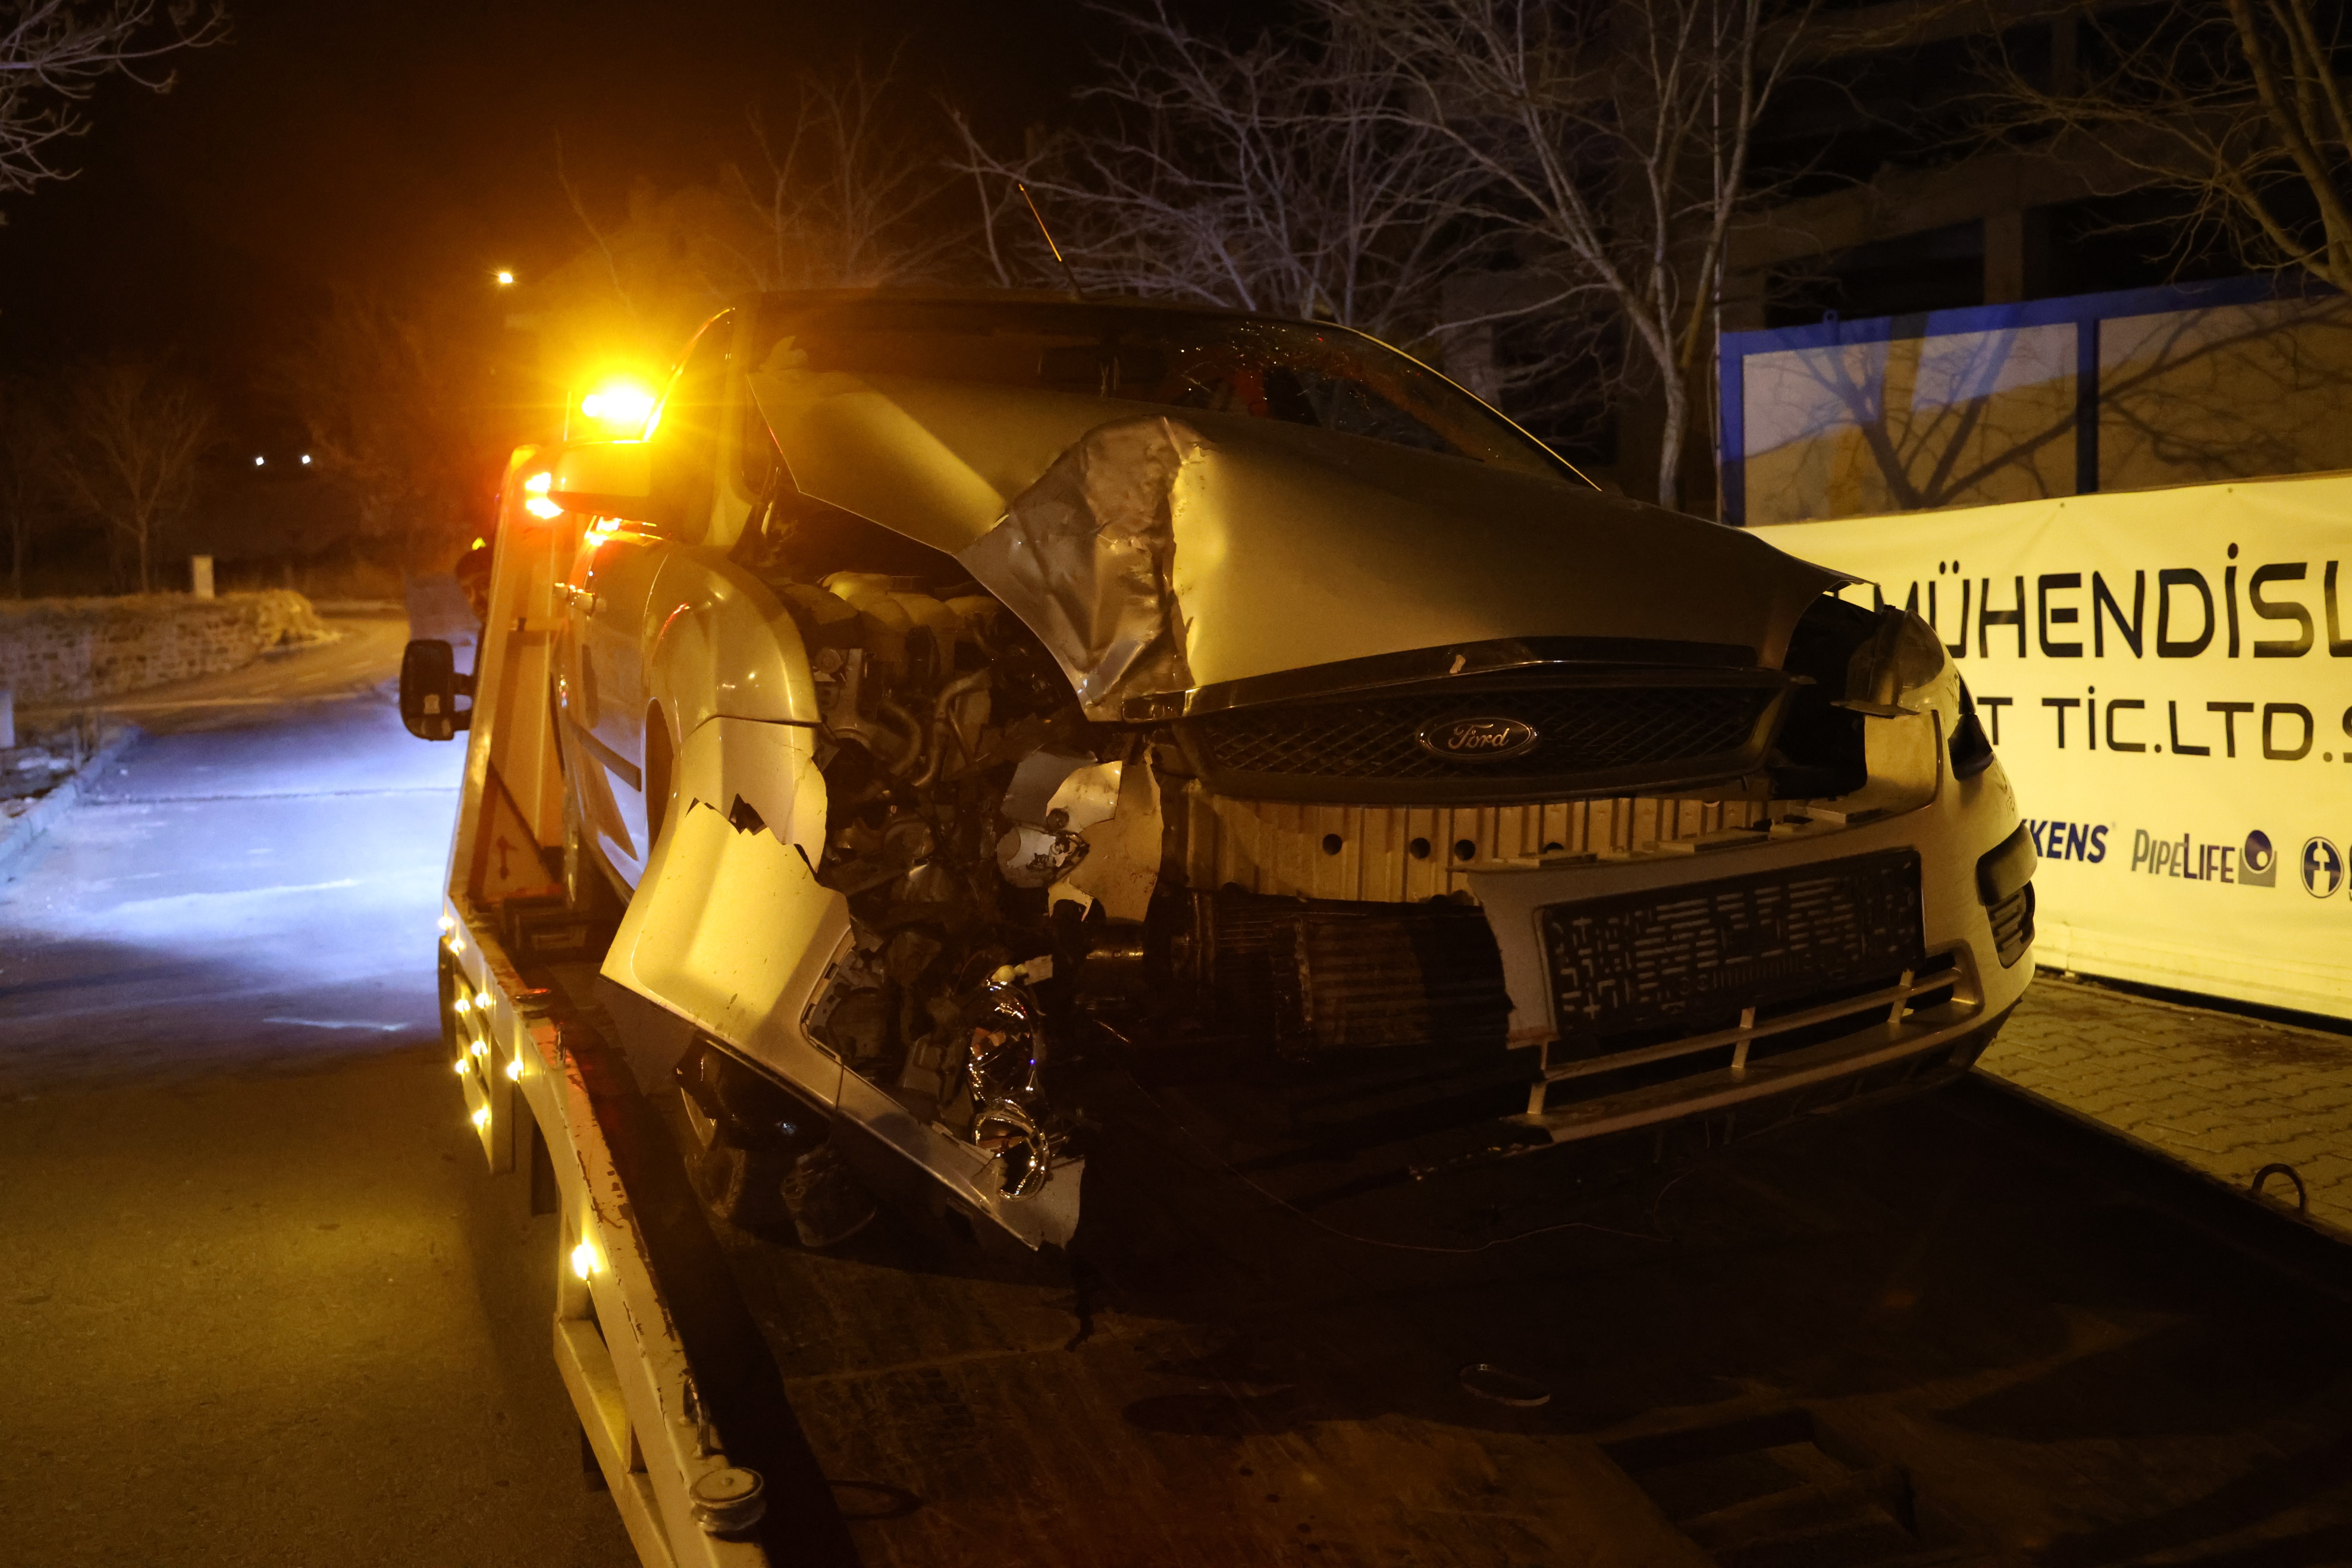 Nevşehir’de bir araç kontrolden çıkıp ağaca çarptı 1 yaralı